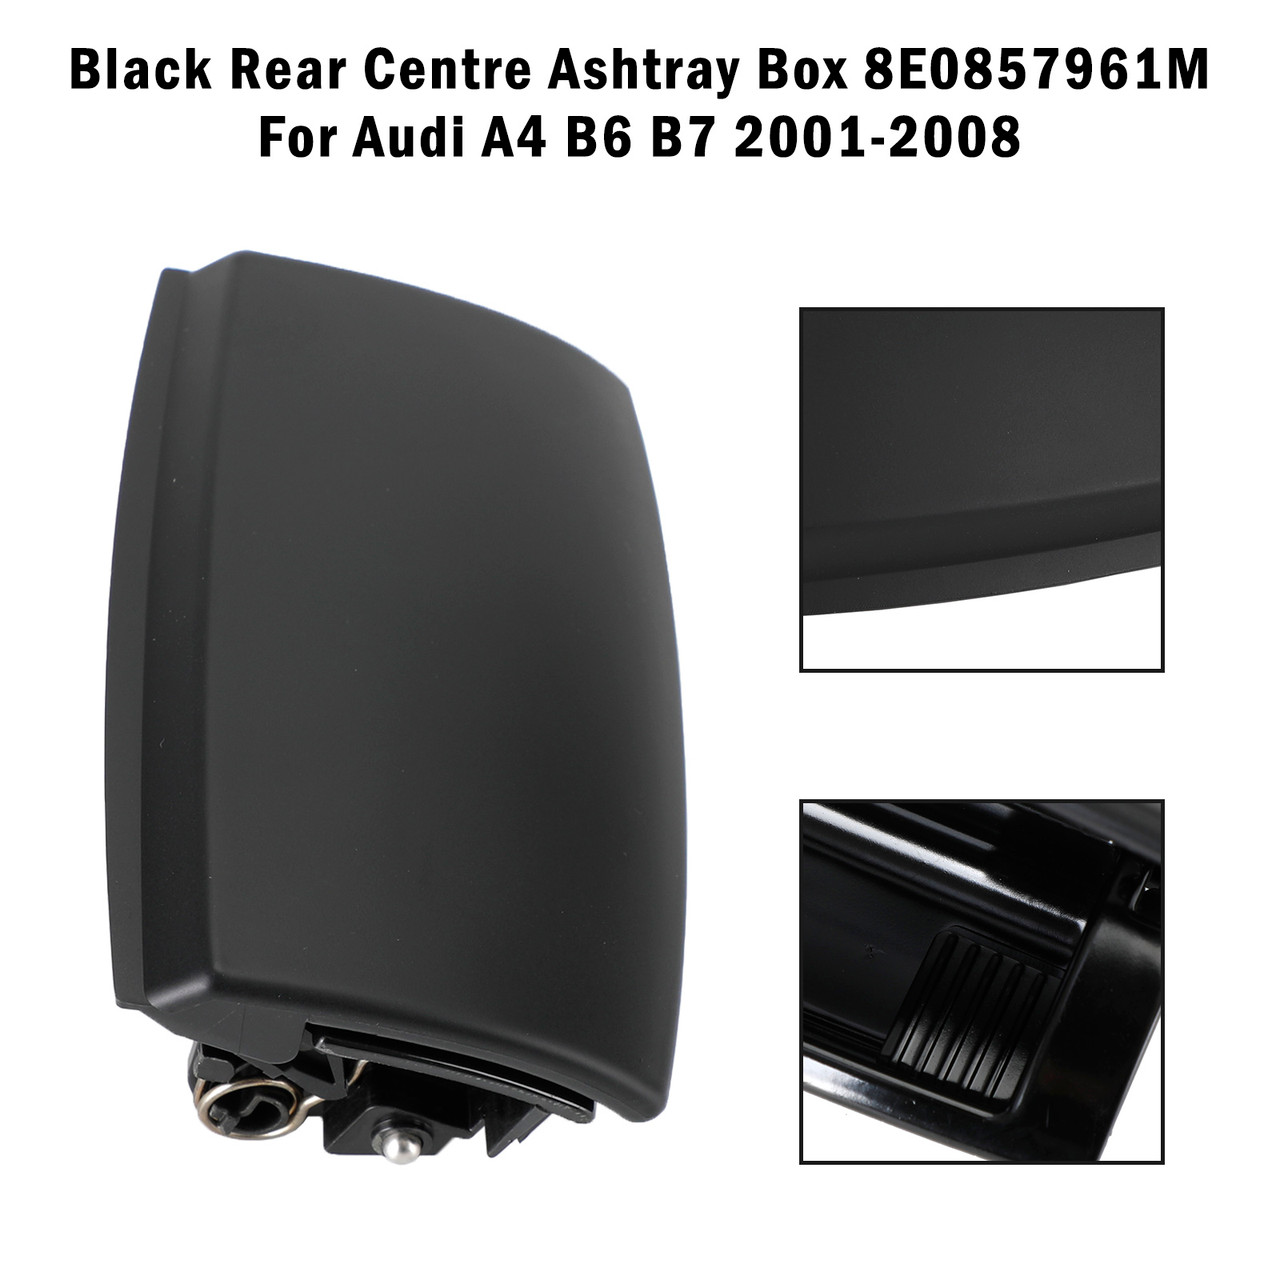 Black Rear Centre Ashtray Box 8E0857961M For Audi A4 B6 B7 2001-2008